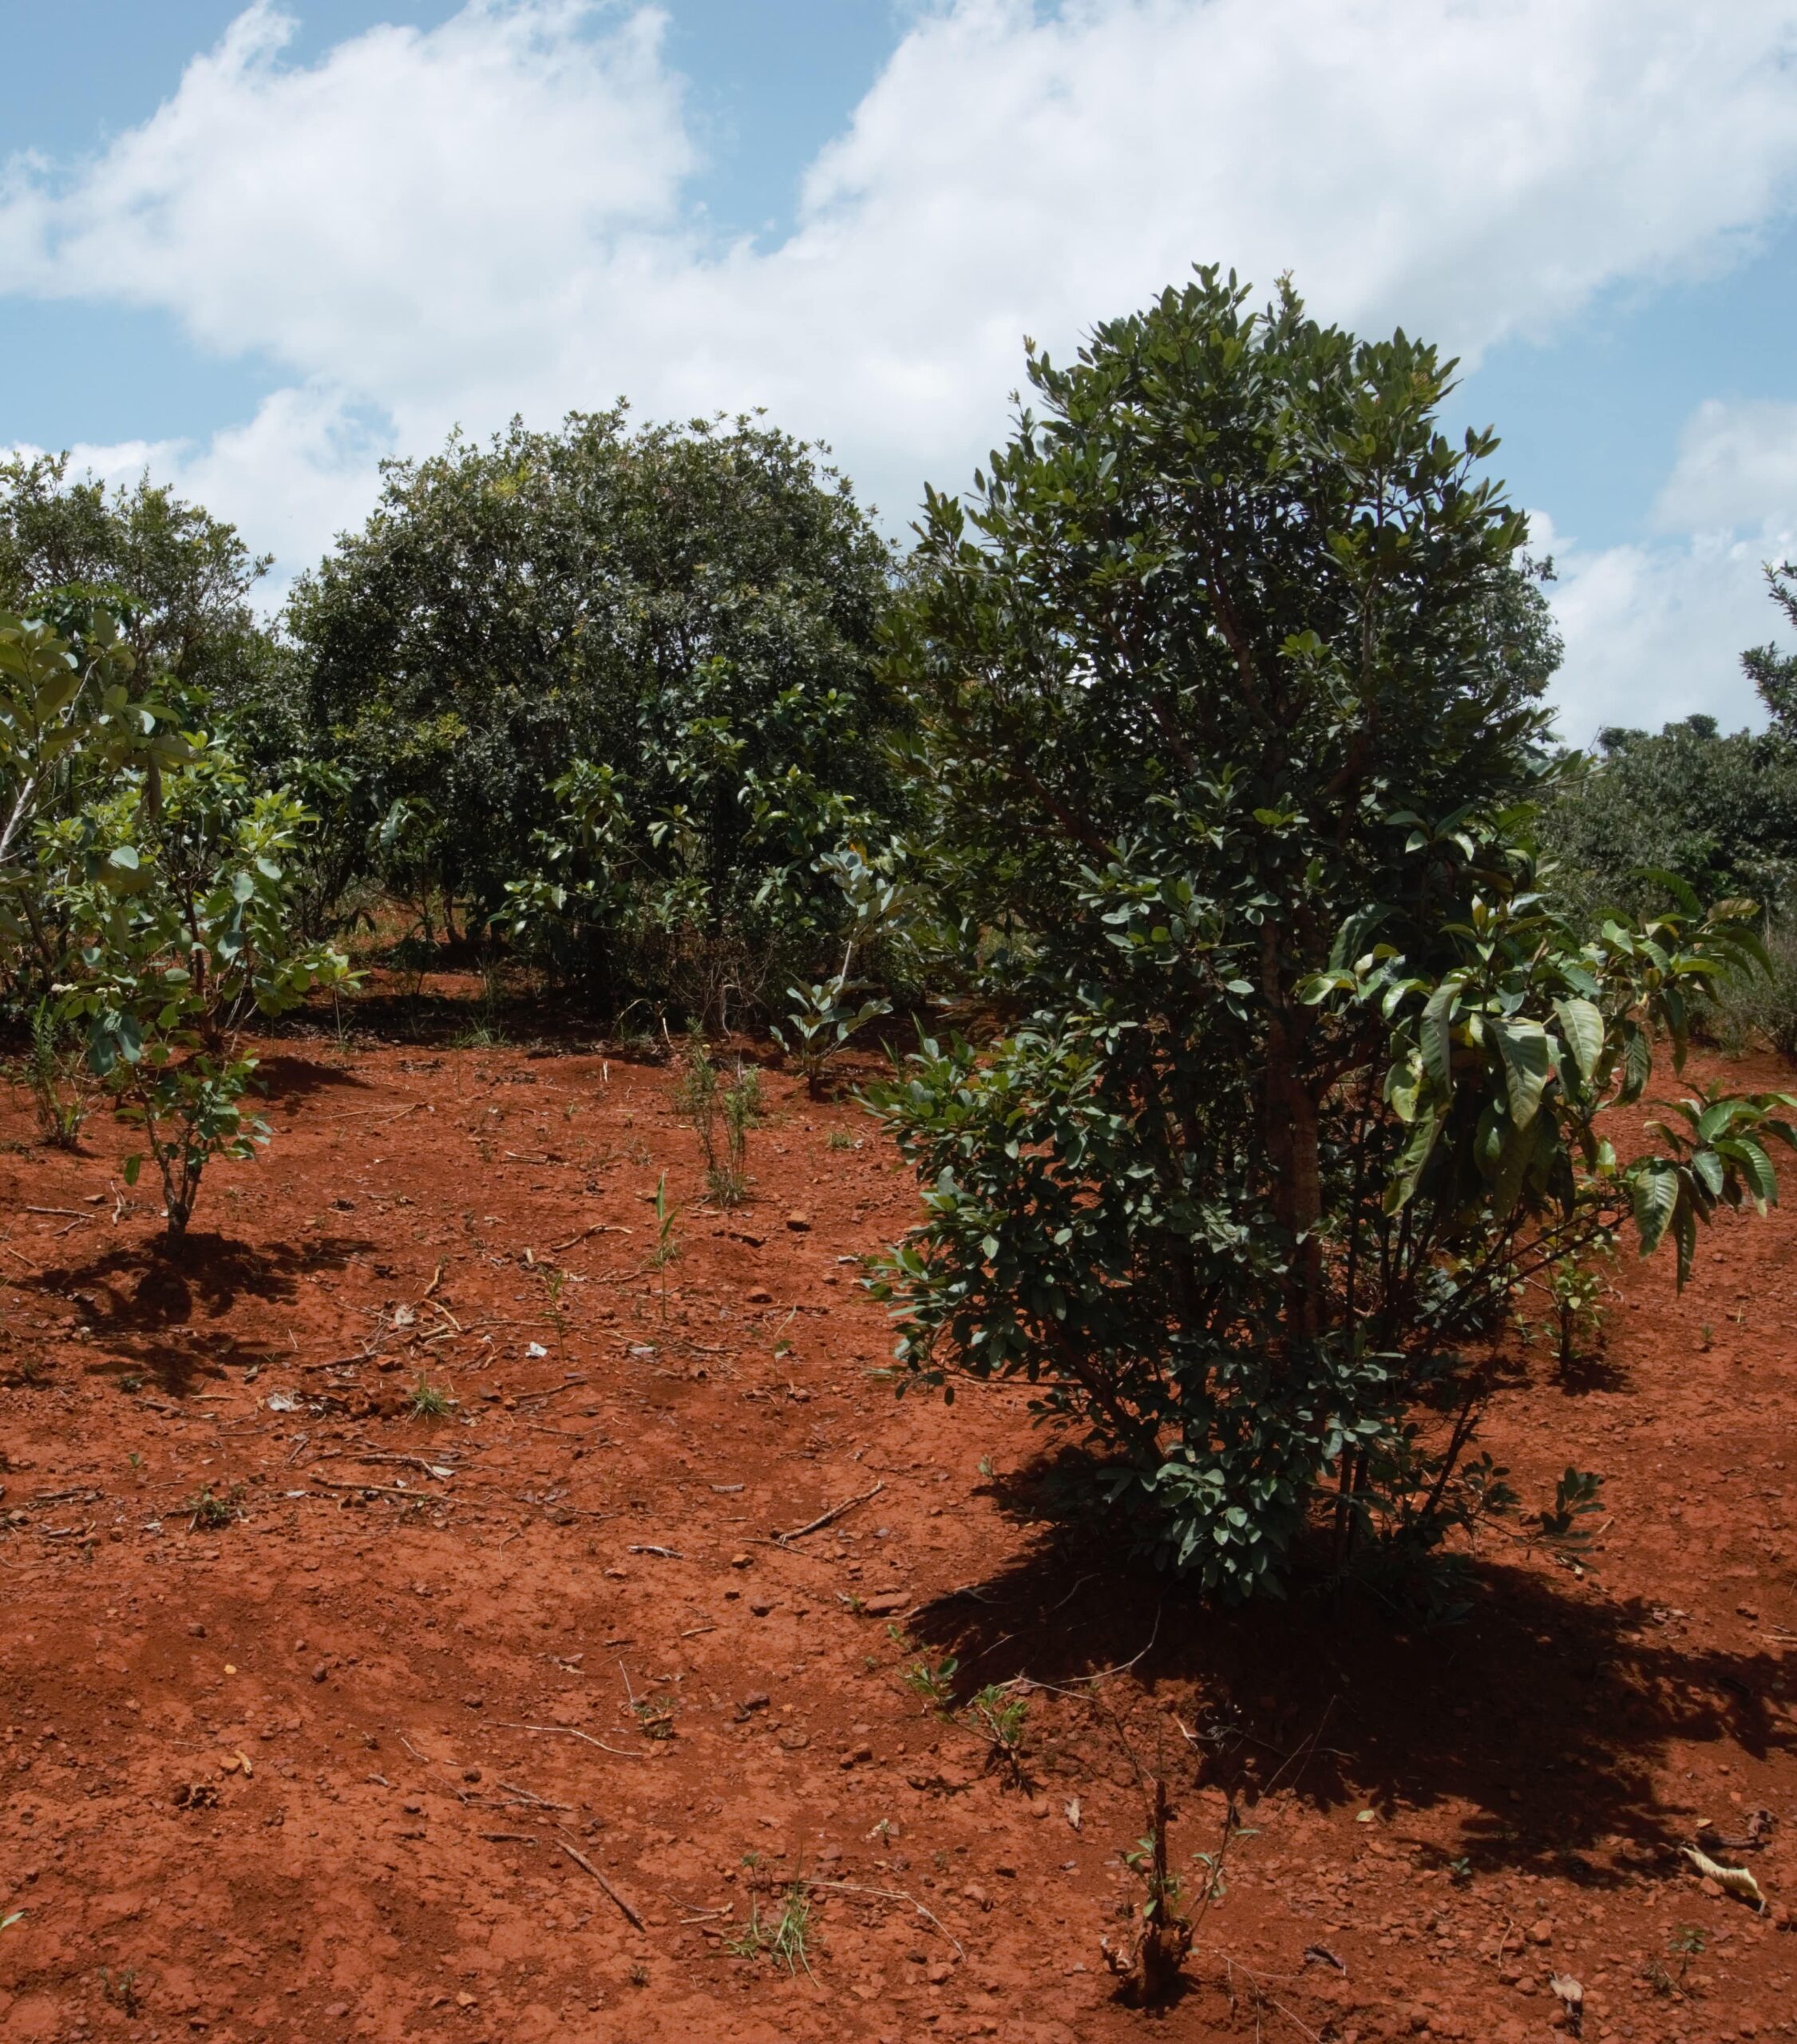 Paysage typique du climat Soudano-guinéen. Terre rouge à l'aspect sec, arbuste espacés de quelques mètres, ombre réduite